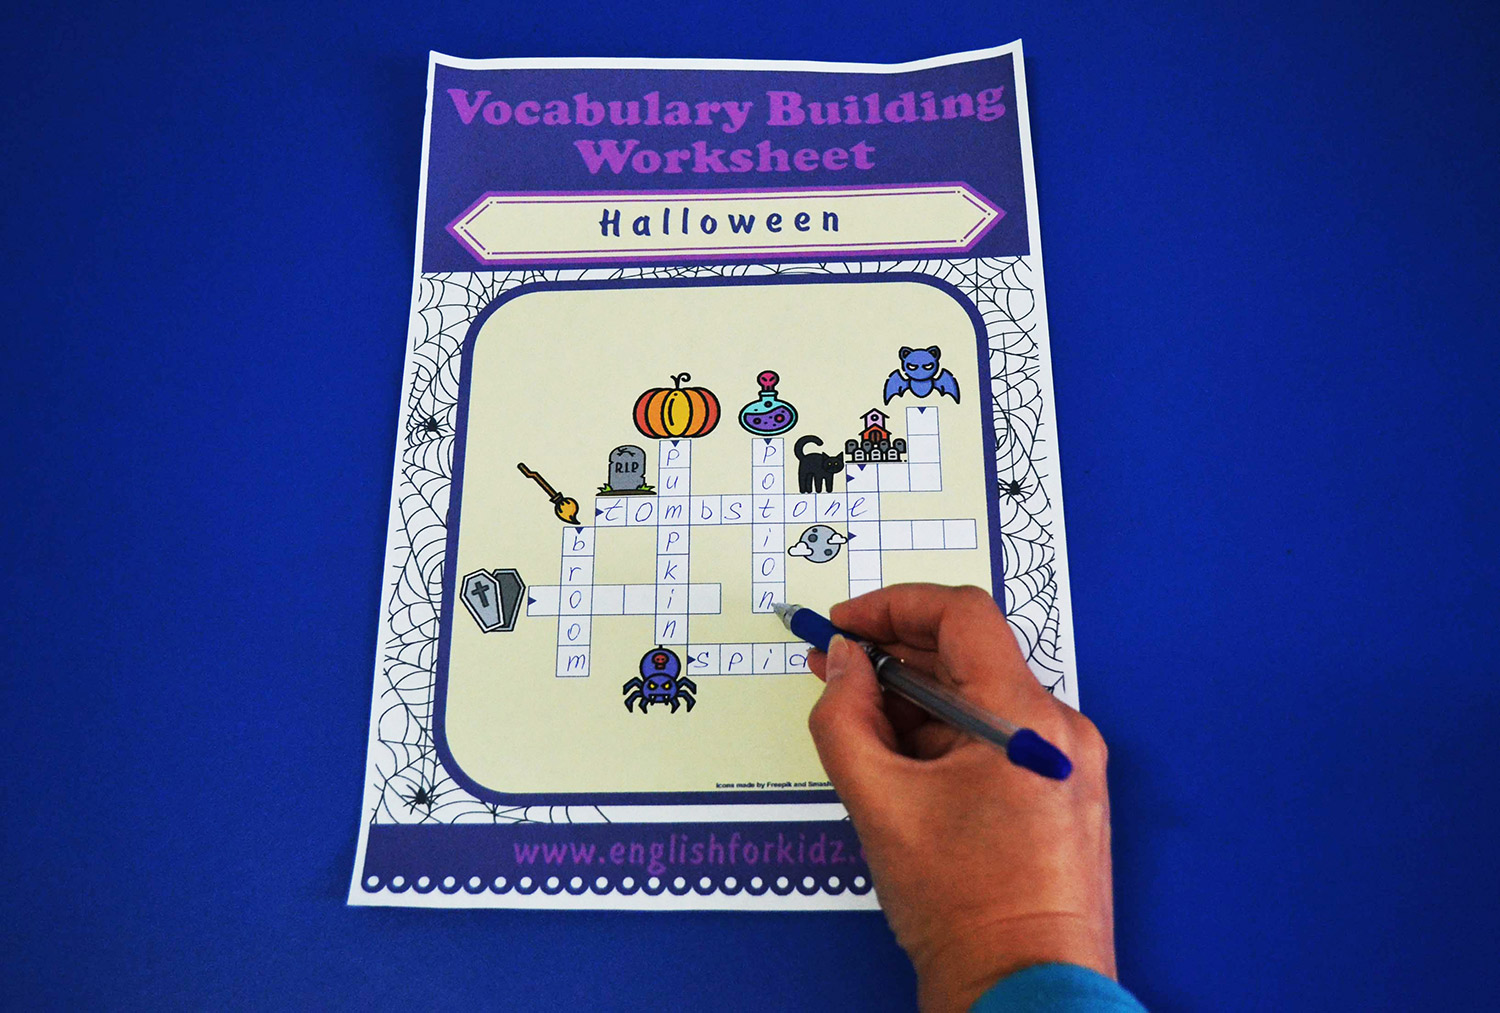 Printable Halloween Crossword Puzzles